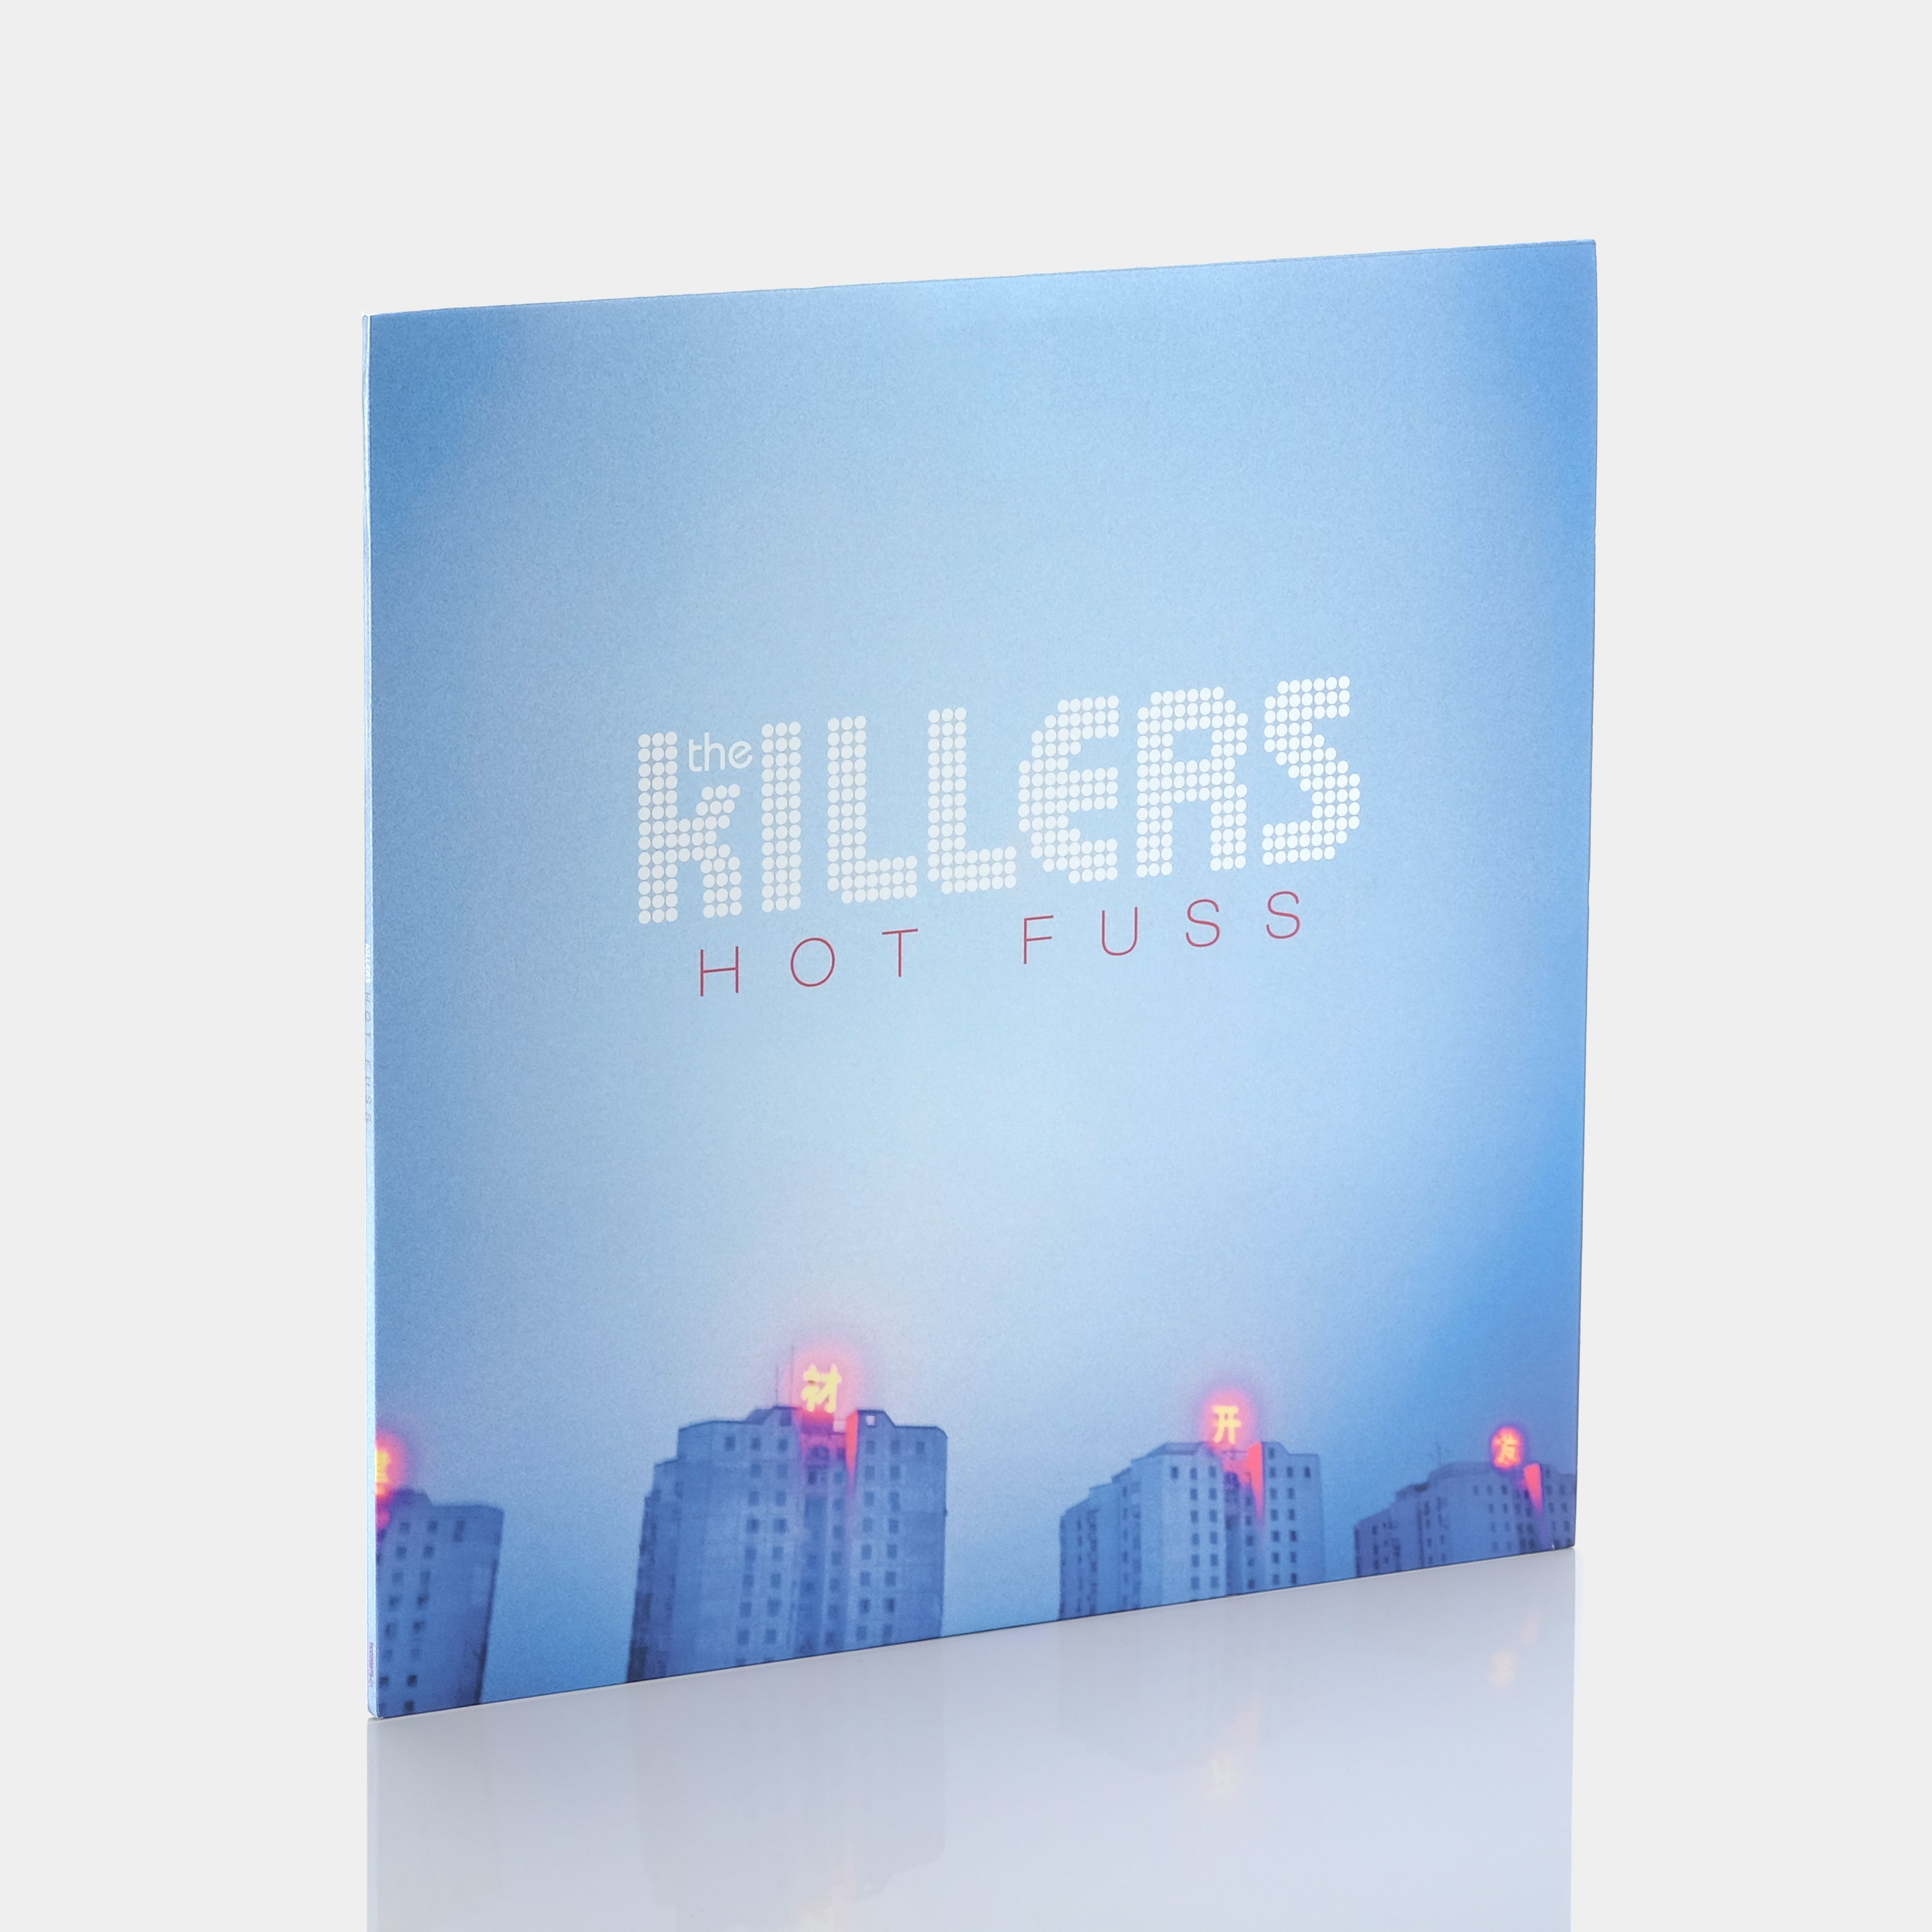 The Killers - Hot Fuss LP Vinyl Record